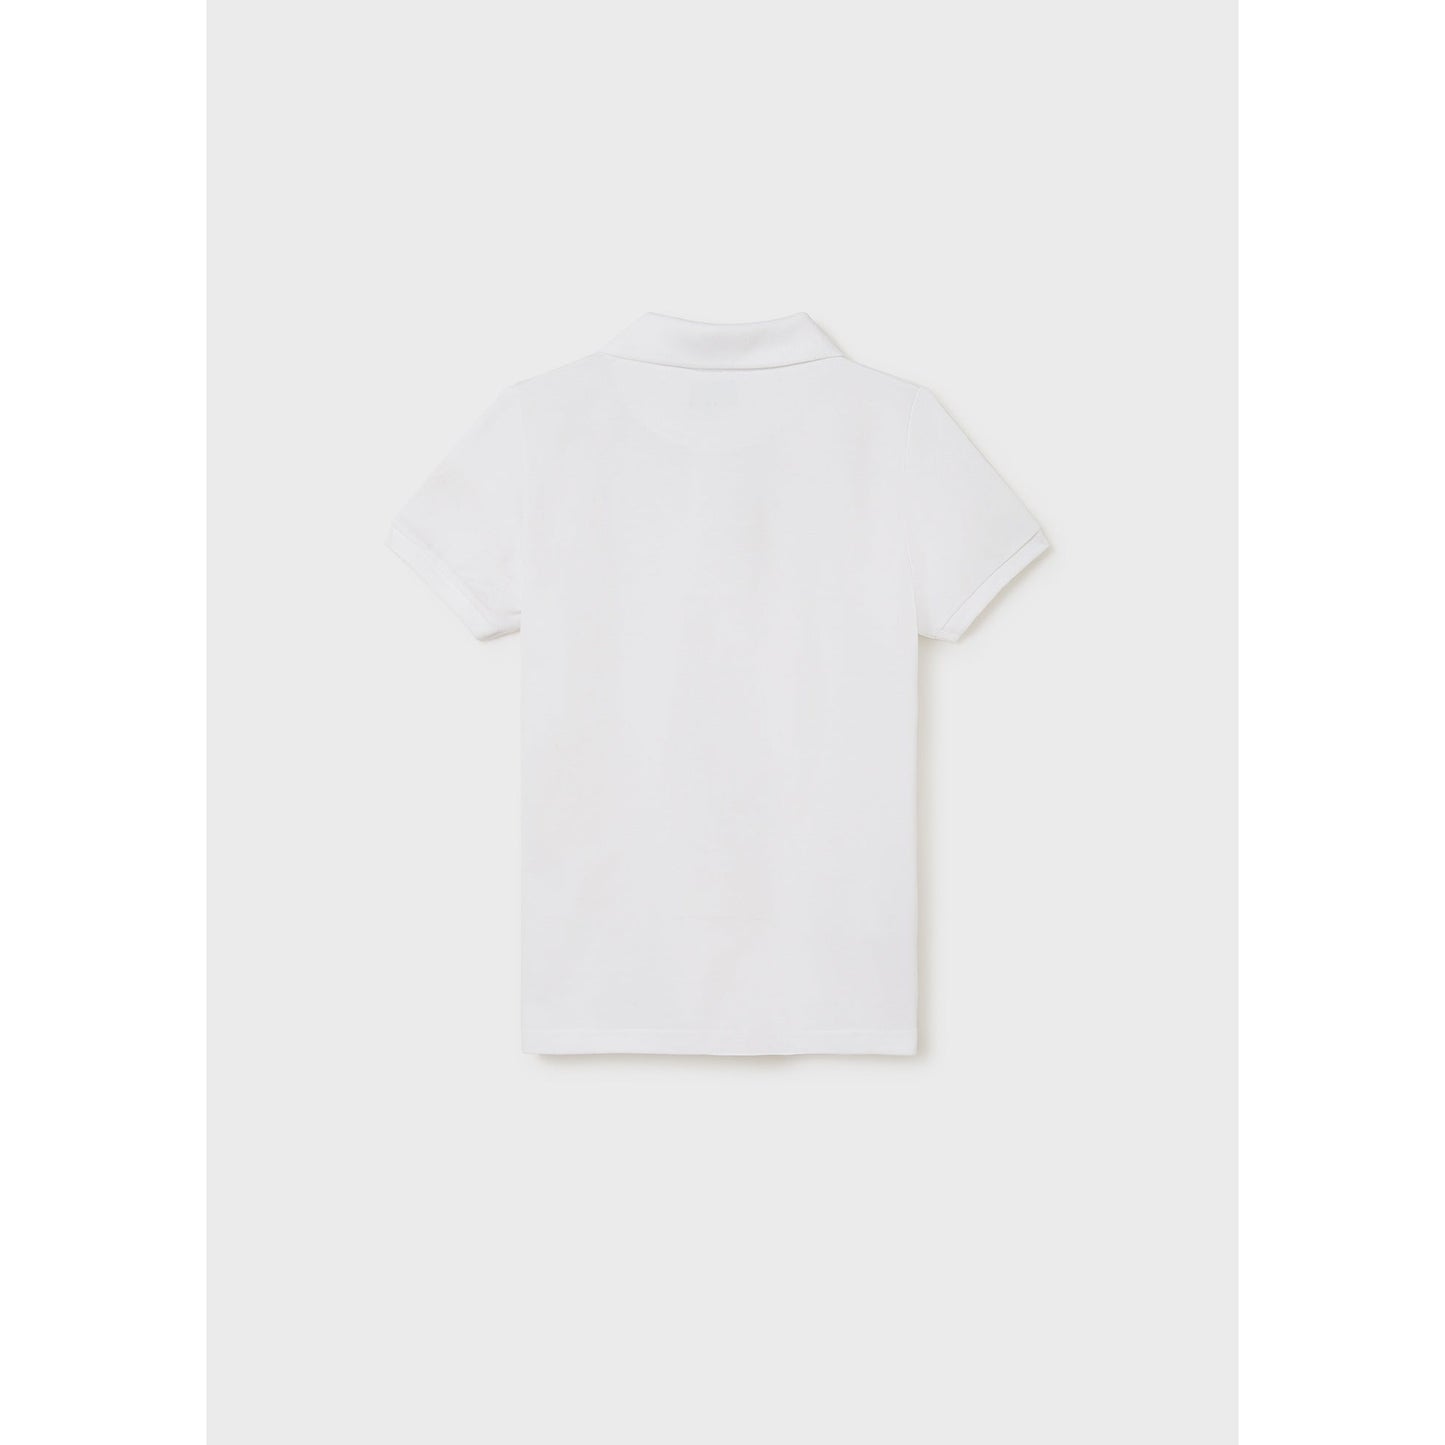 Nukutavake Boys Basic Short Sleeve Polo _White 890-28